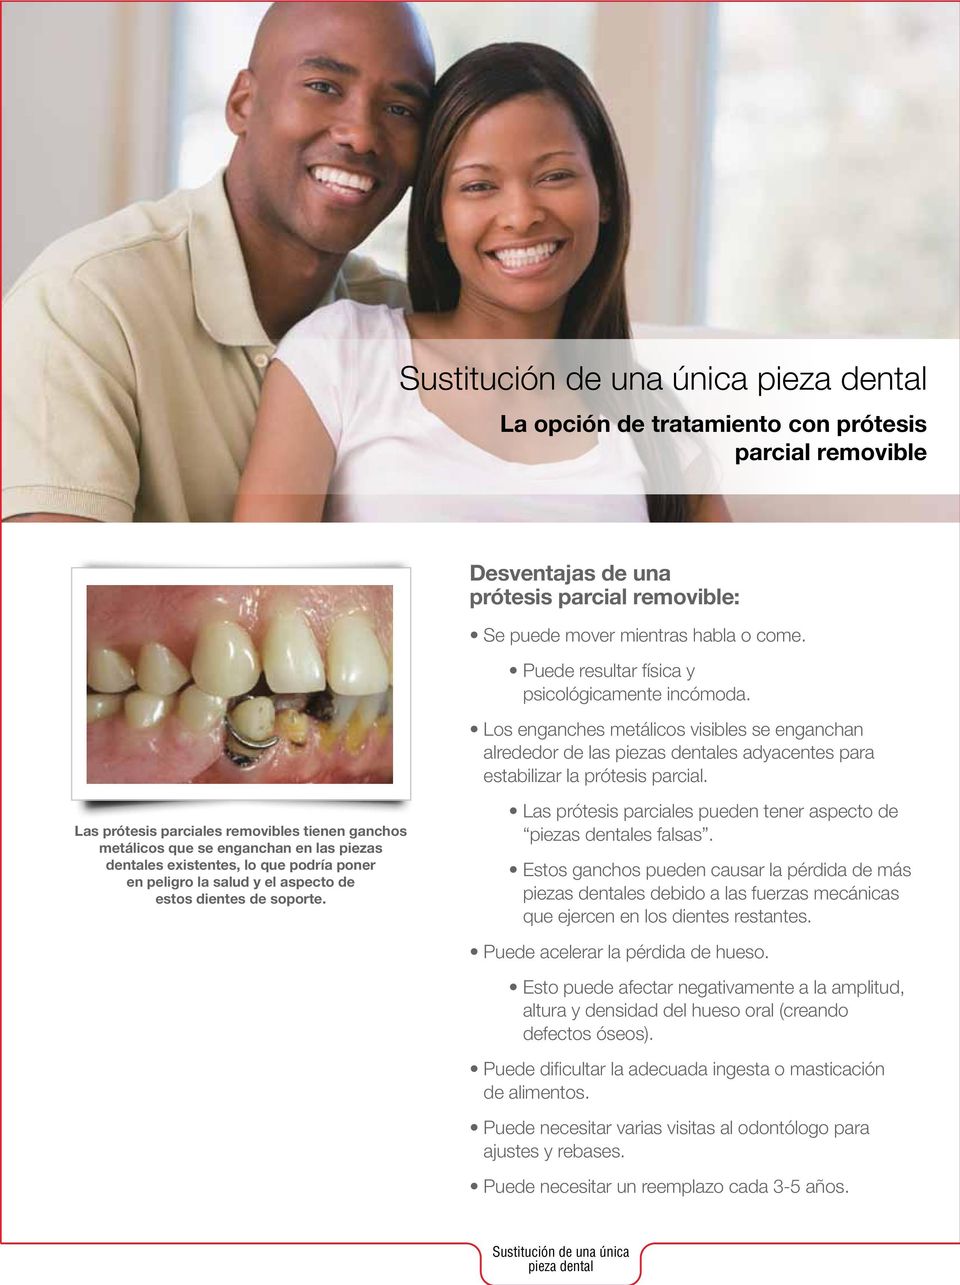 Las prótesis parciales removibles tienen ganchos metálicos que se enganchan en las piezas dentales existentes, lo que podría poner en peligro la salud y el aspecto de estos dientes de soporte.